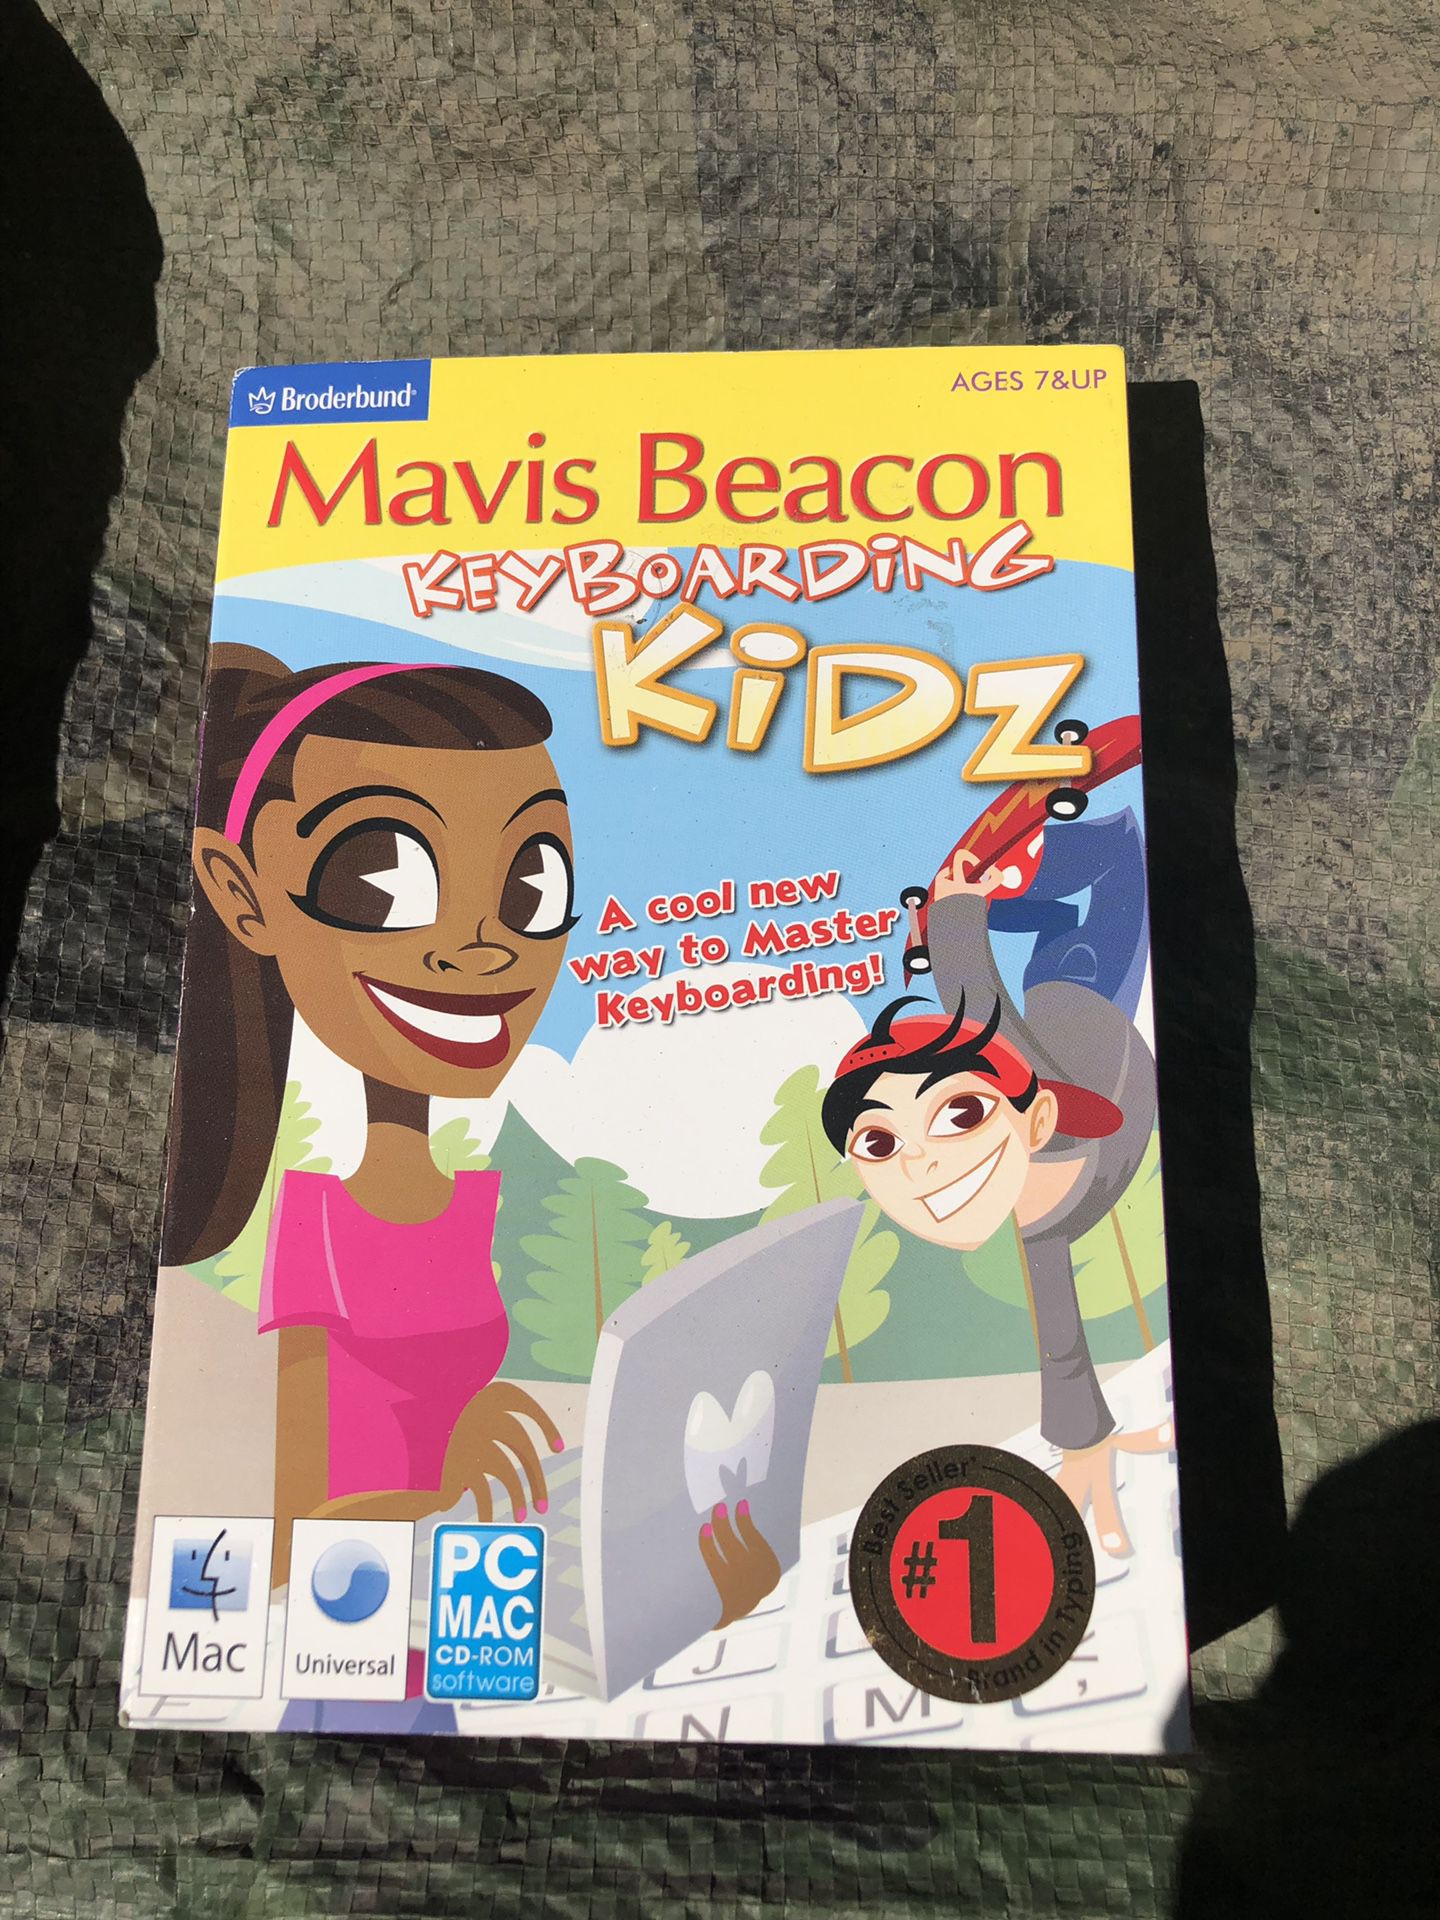 Mavis Beacon keyboarding kids software